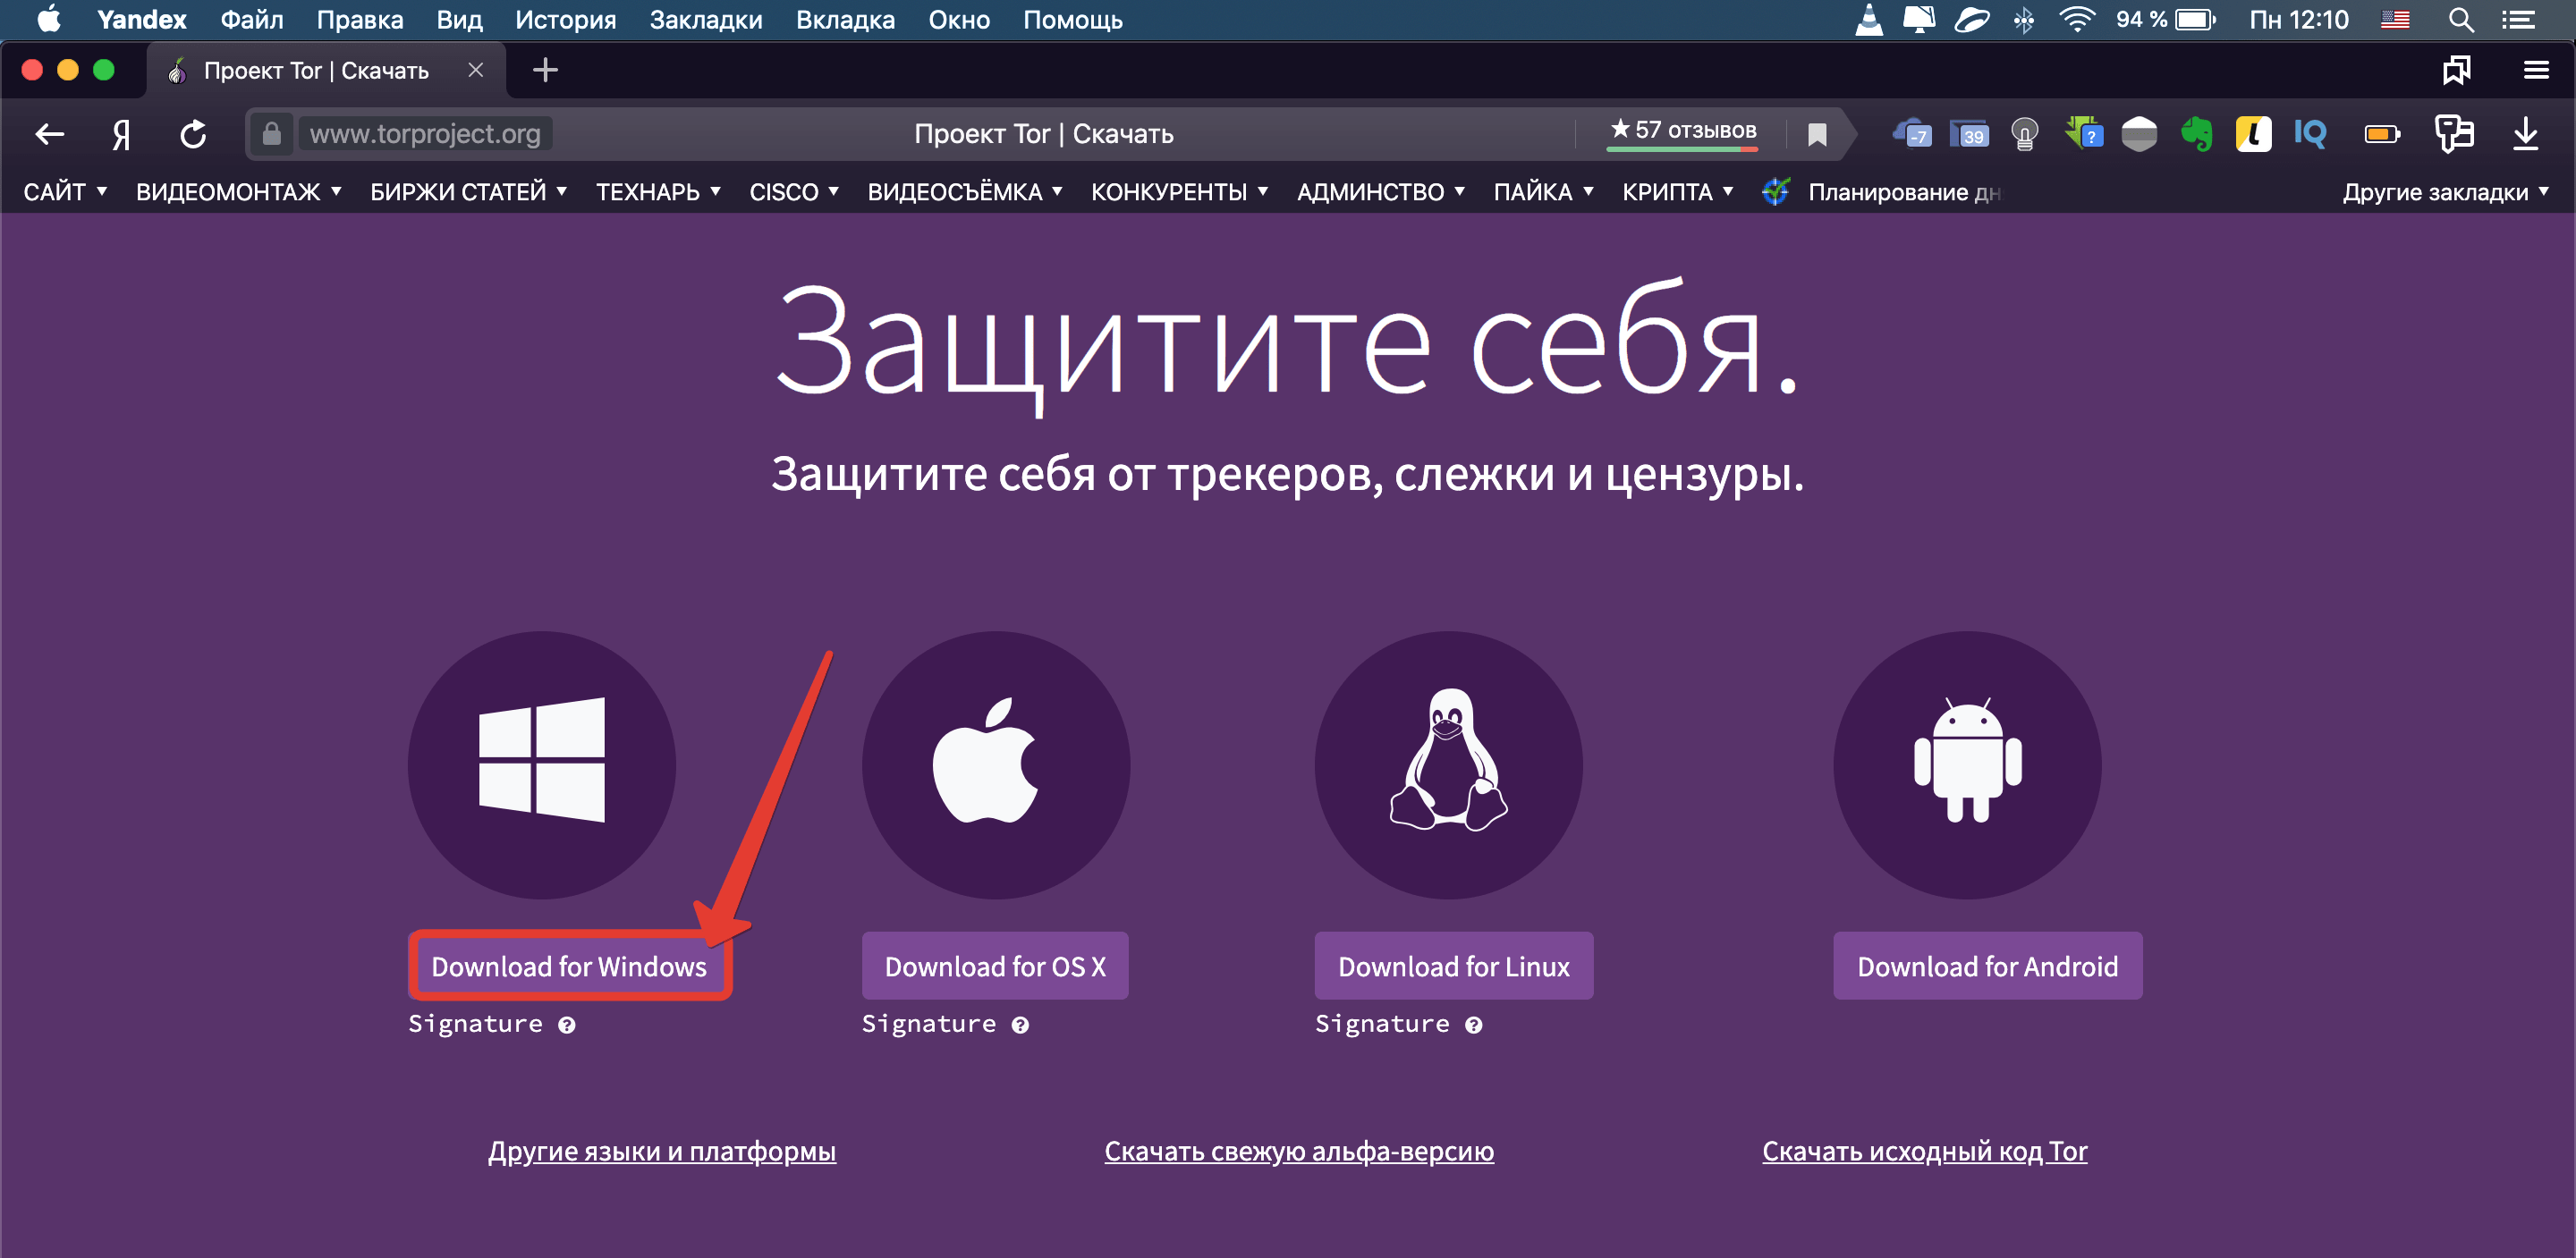 Как попасть в даркнет через андроид настроенный kraken на русском языке даркнет вход